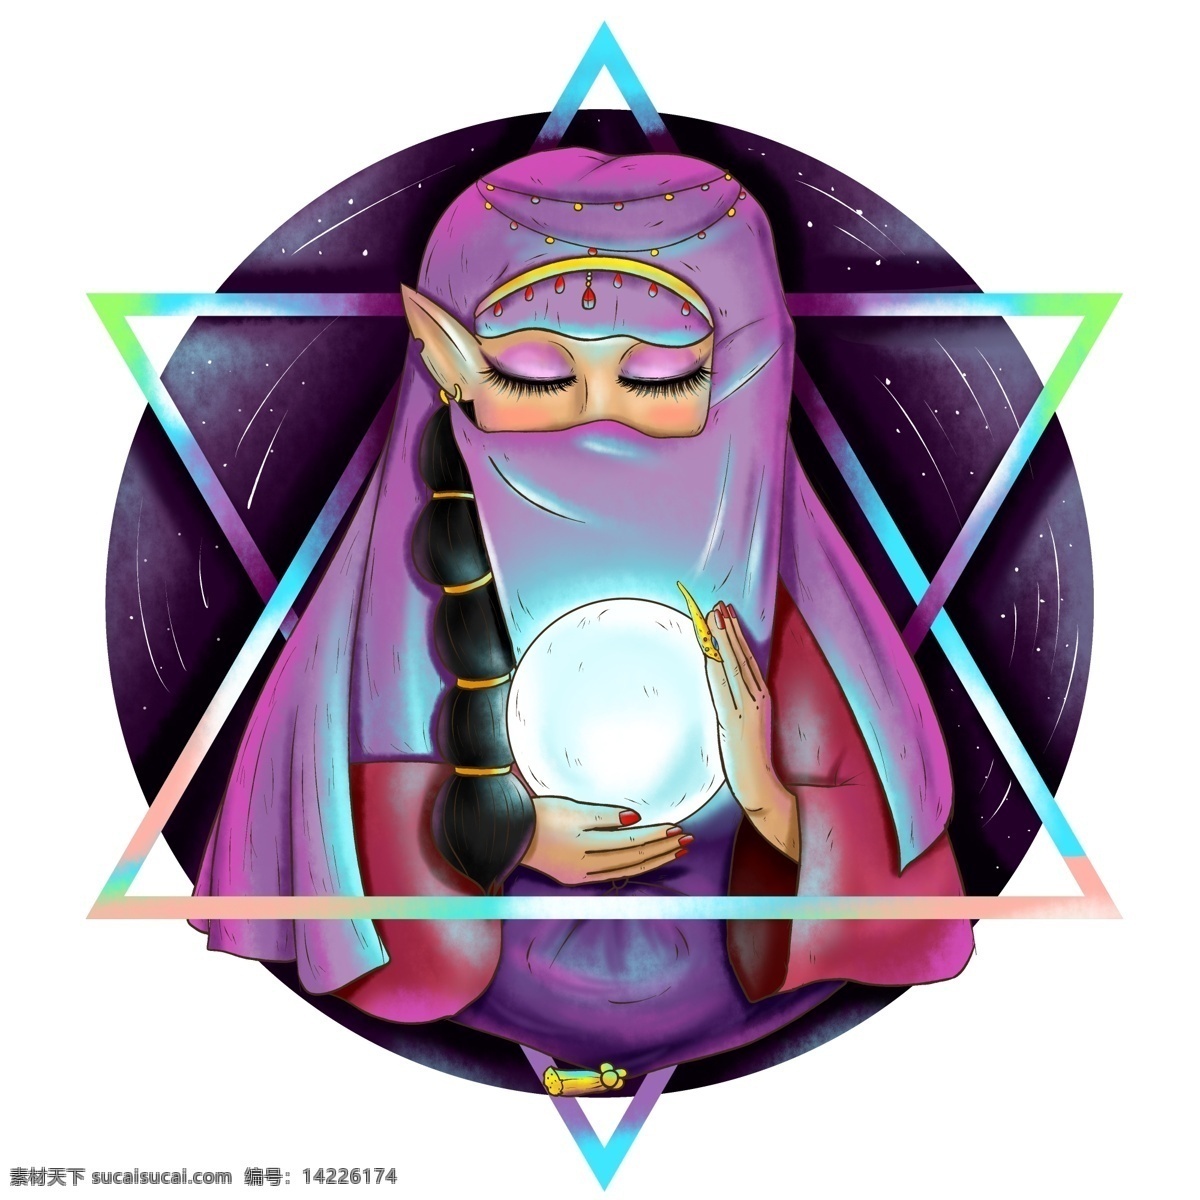 原创 手绘 水晶球 六 芒 星星 图 占卜 女巫 精灵 元素 人物 紫色 海报素材 插画 六芒星 星图 占卜女巫